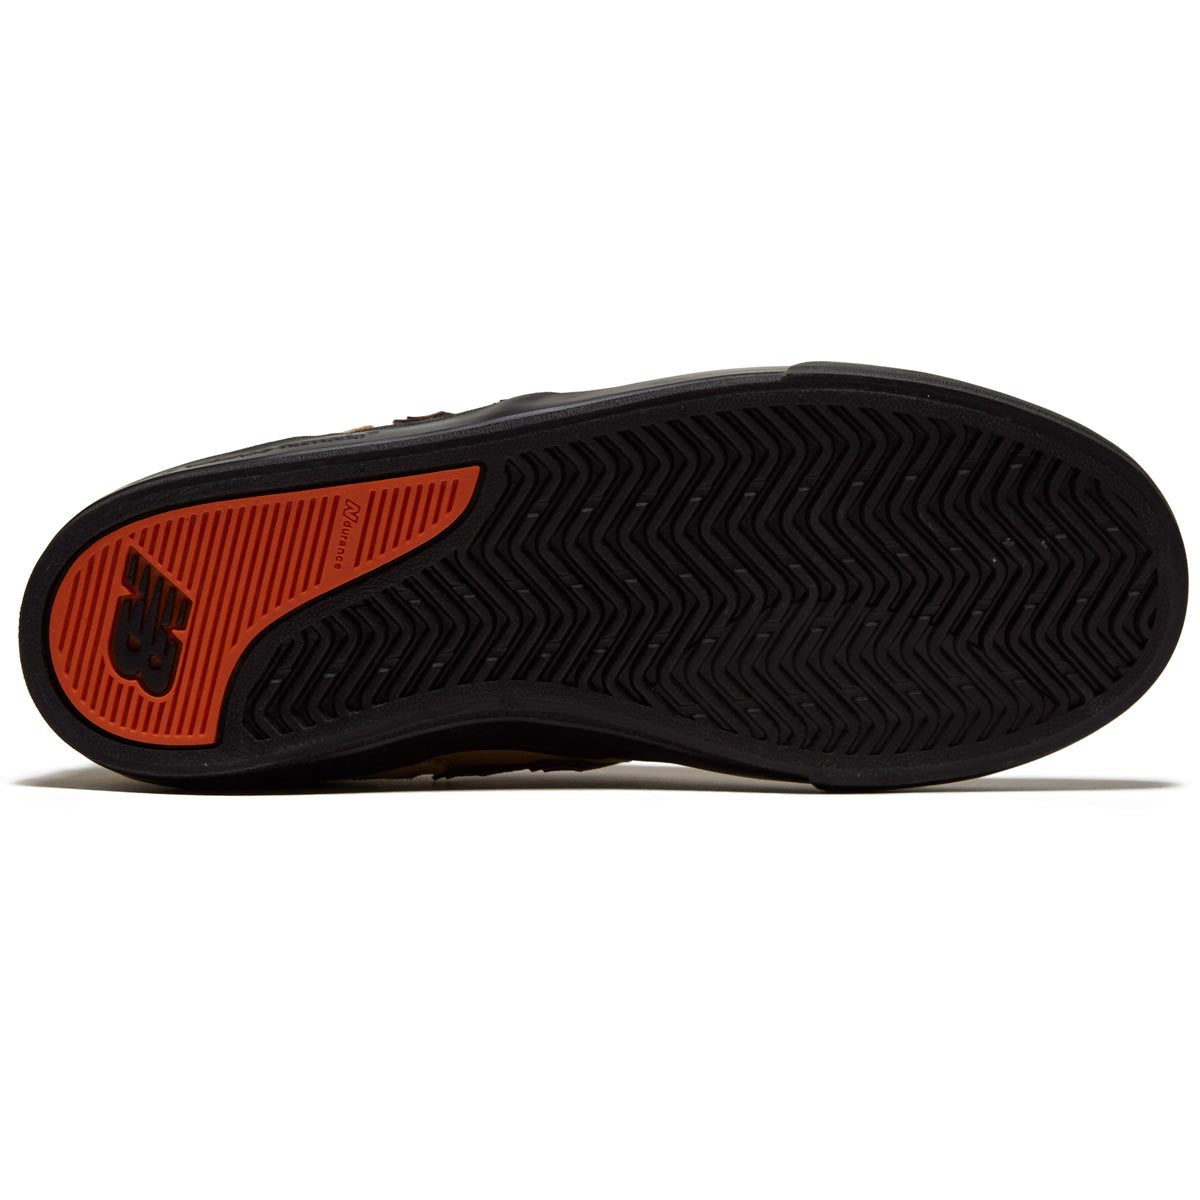 New Balance 306 Foy Shoes - Khaki/Black image 4